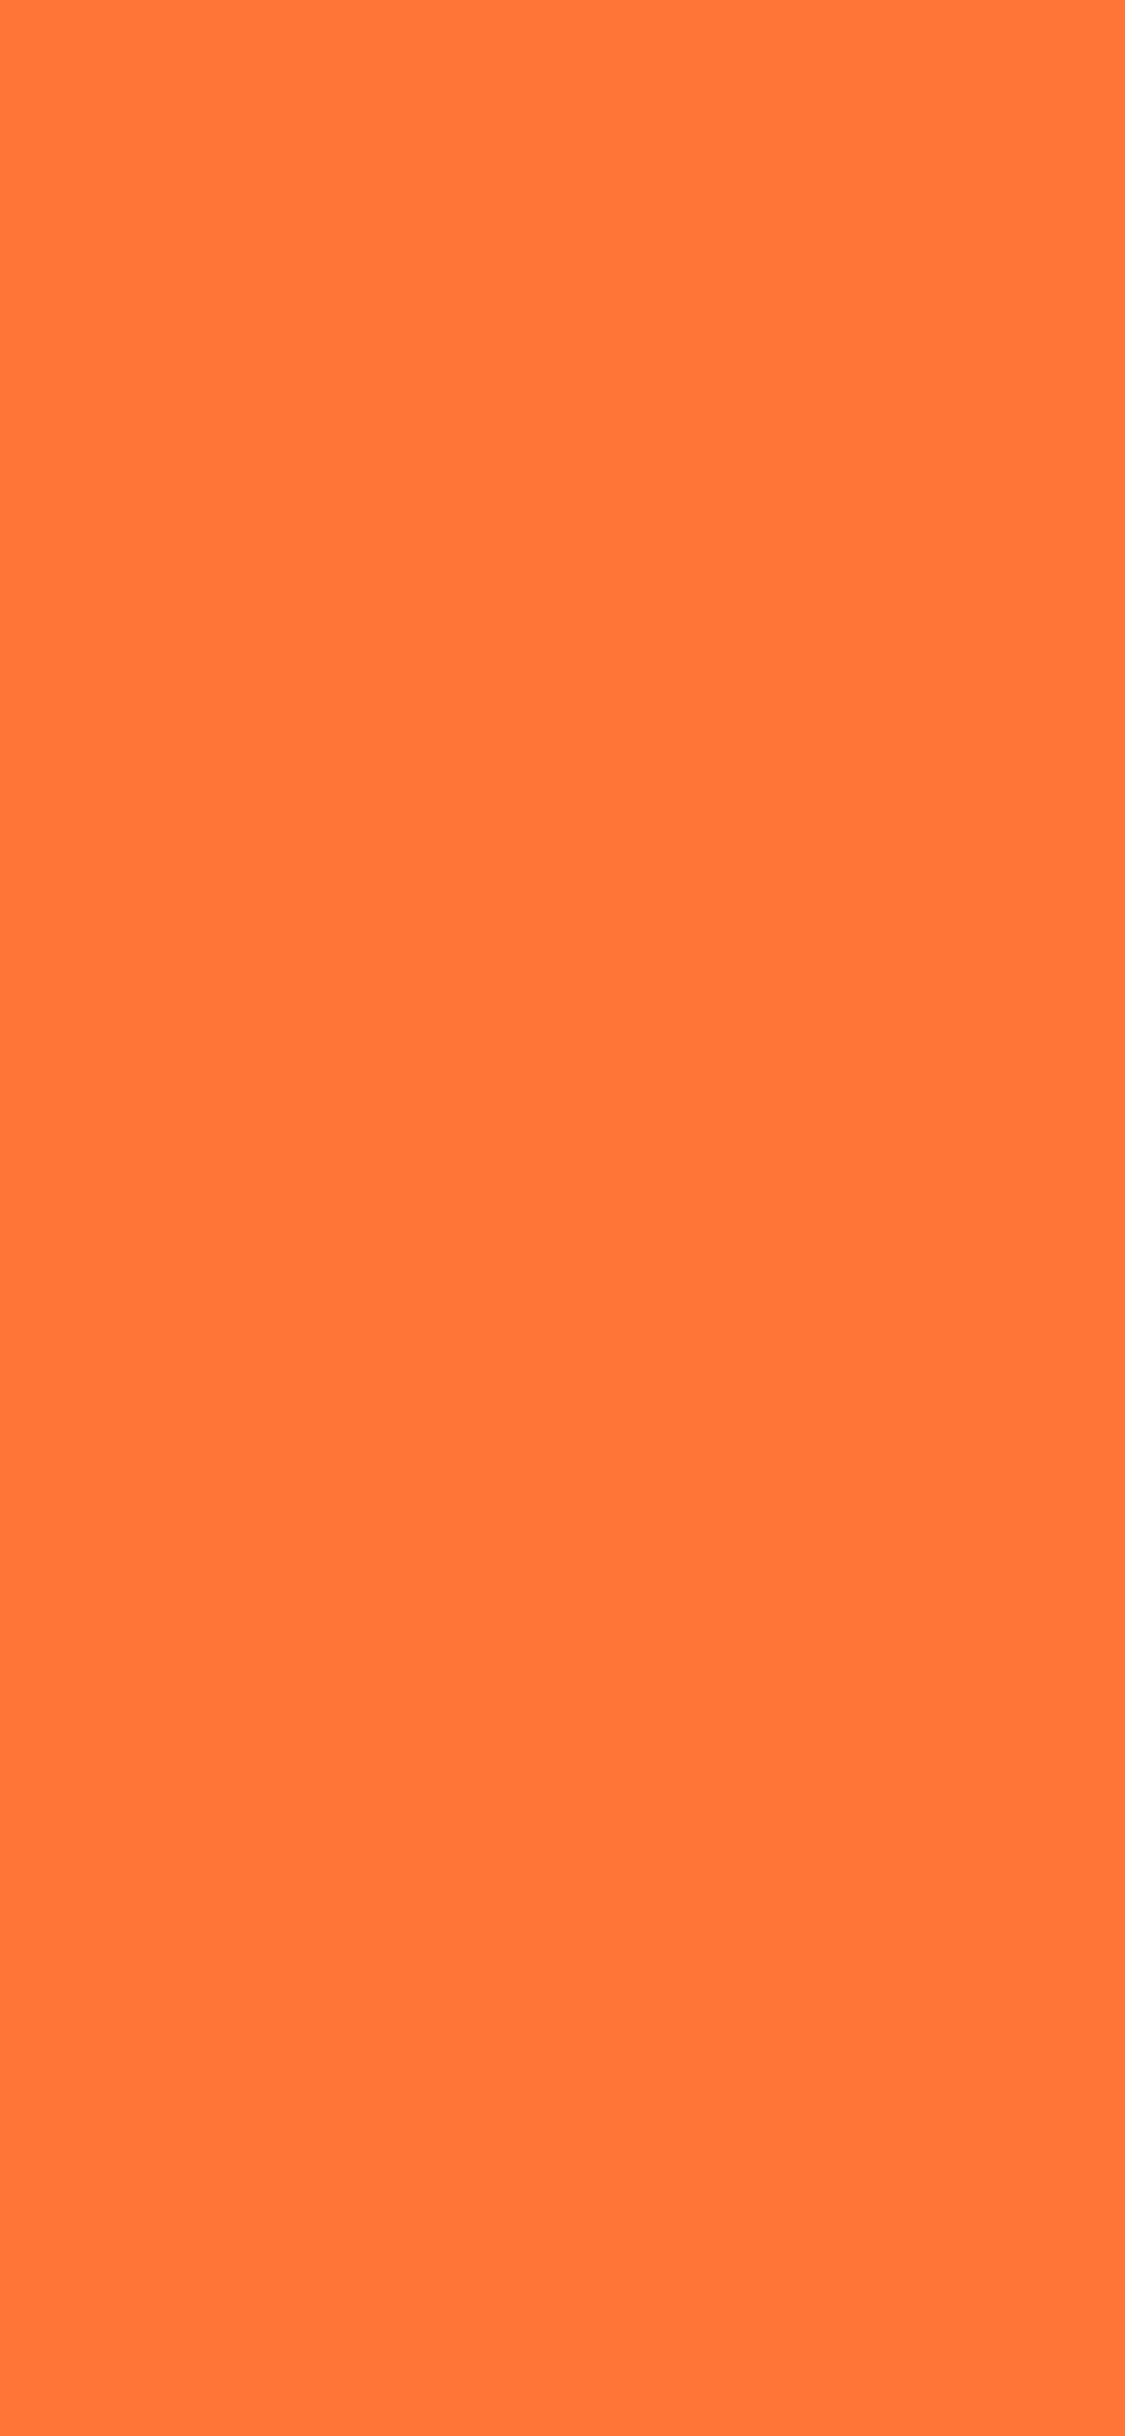 1125x2436 Orange Crayola Solid Color Background